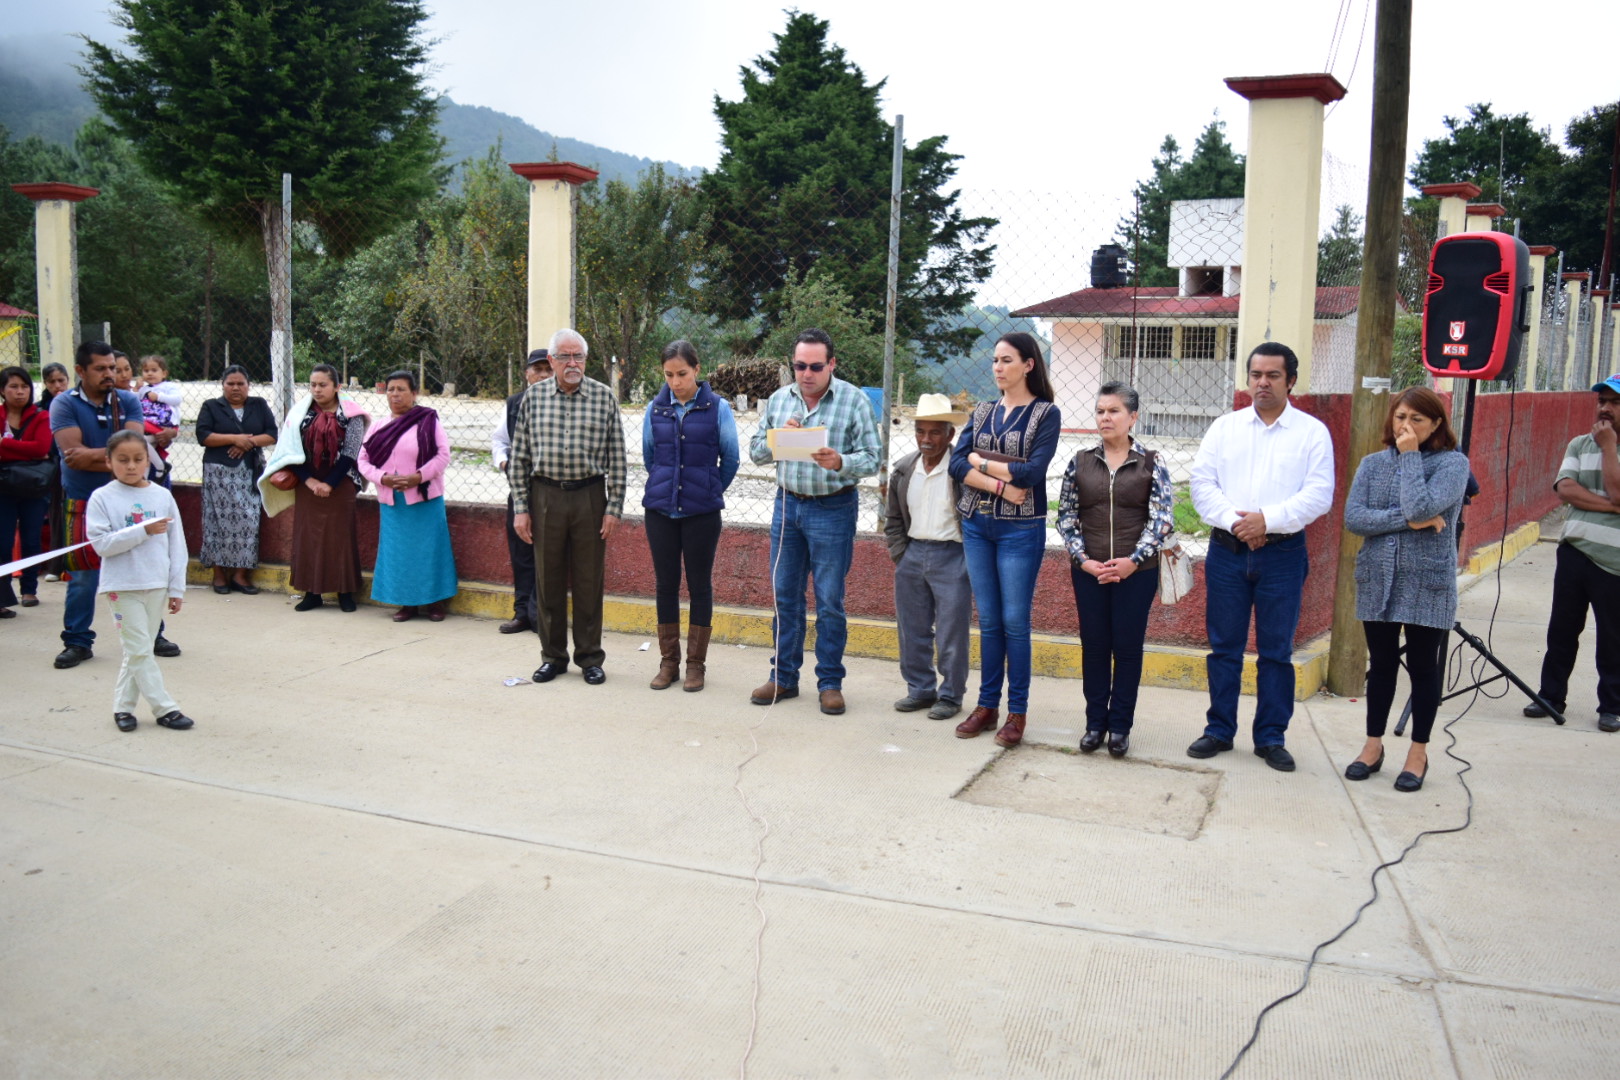 Edil inaugura red eléctrica en comunidad de Zacapoaxtla